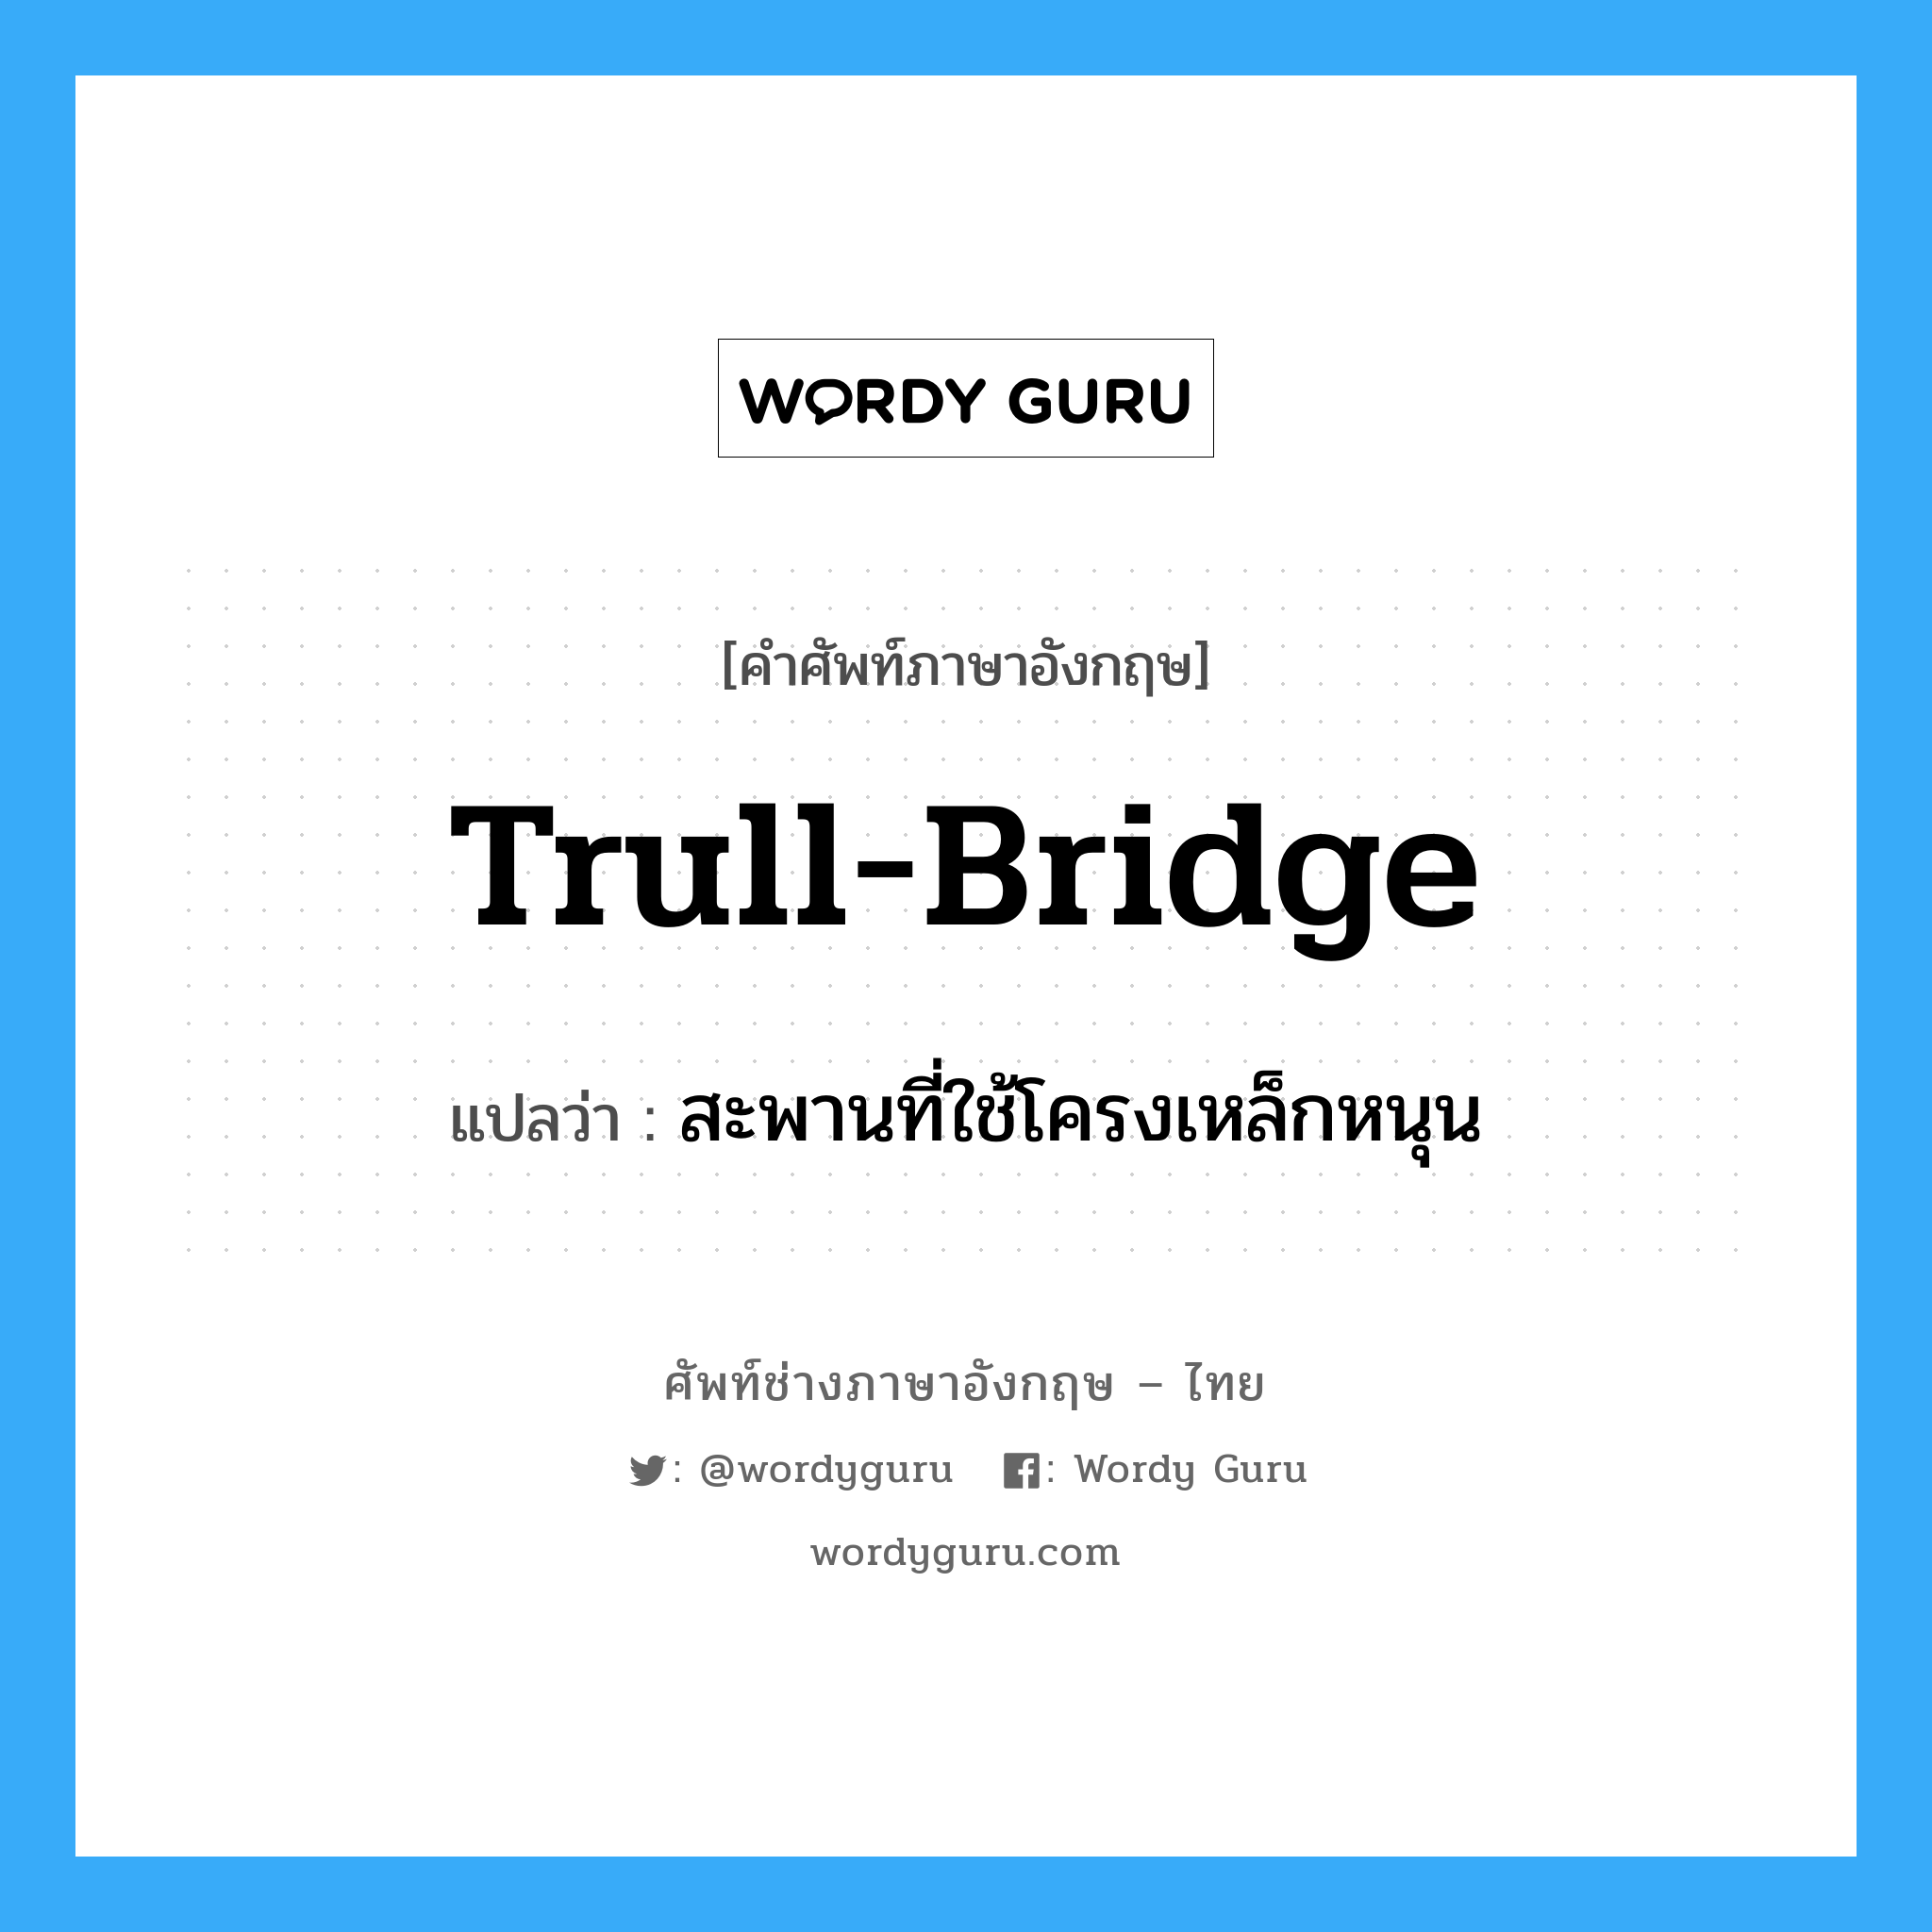 สะพานที่ใช้โครงเหล็กหนุน ภาษาอังกฤษ?, คำศัพท์ช่างภาษาอังกฤษ - ไทย สะพานที่ใช้โครงเหล็กหนุน คำศัพท์ภาษาอังกฤษ สะพานที่ใช้โครงเหล็กหนุน แปลว่า trull-bridge